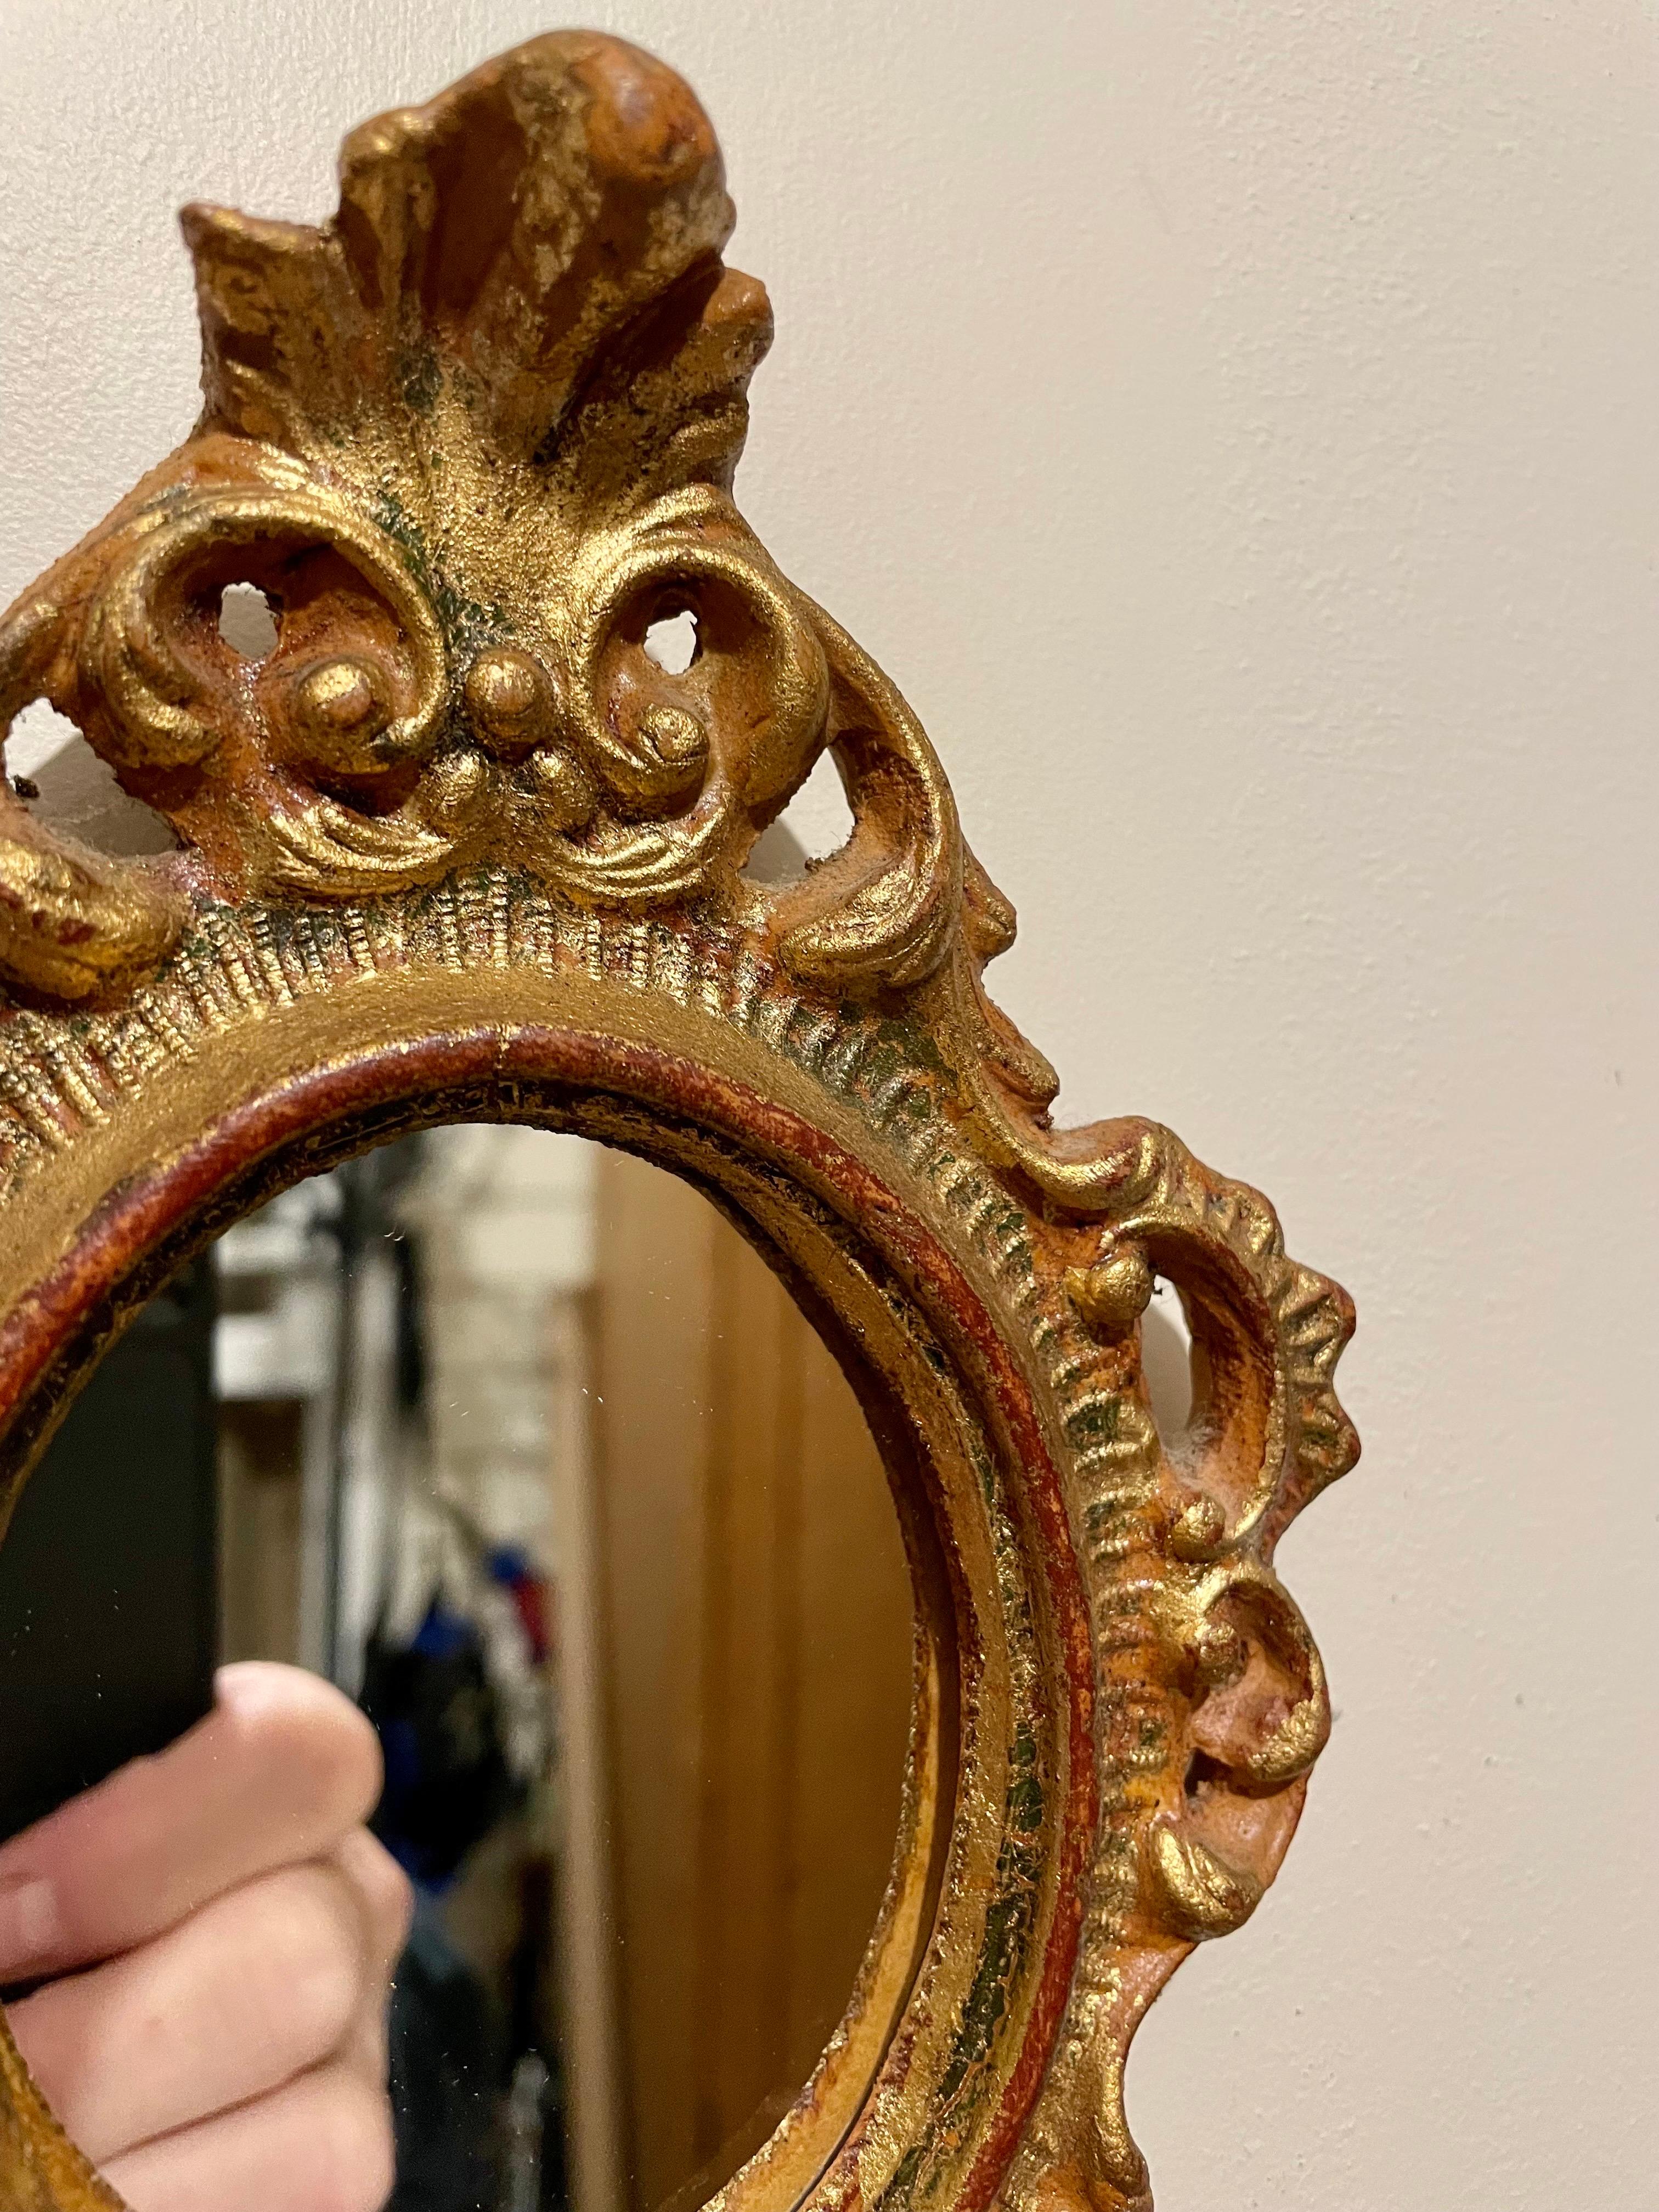 Superbe miroir Florentine italien en bois doré de style Hollywood Regency. Bon état avec un miroir récemment remplacé. Mesure 8,5